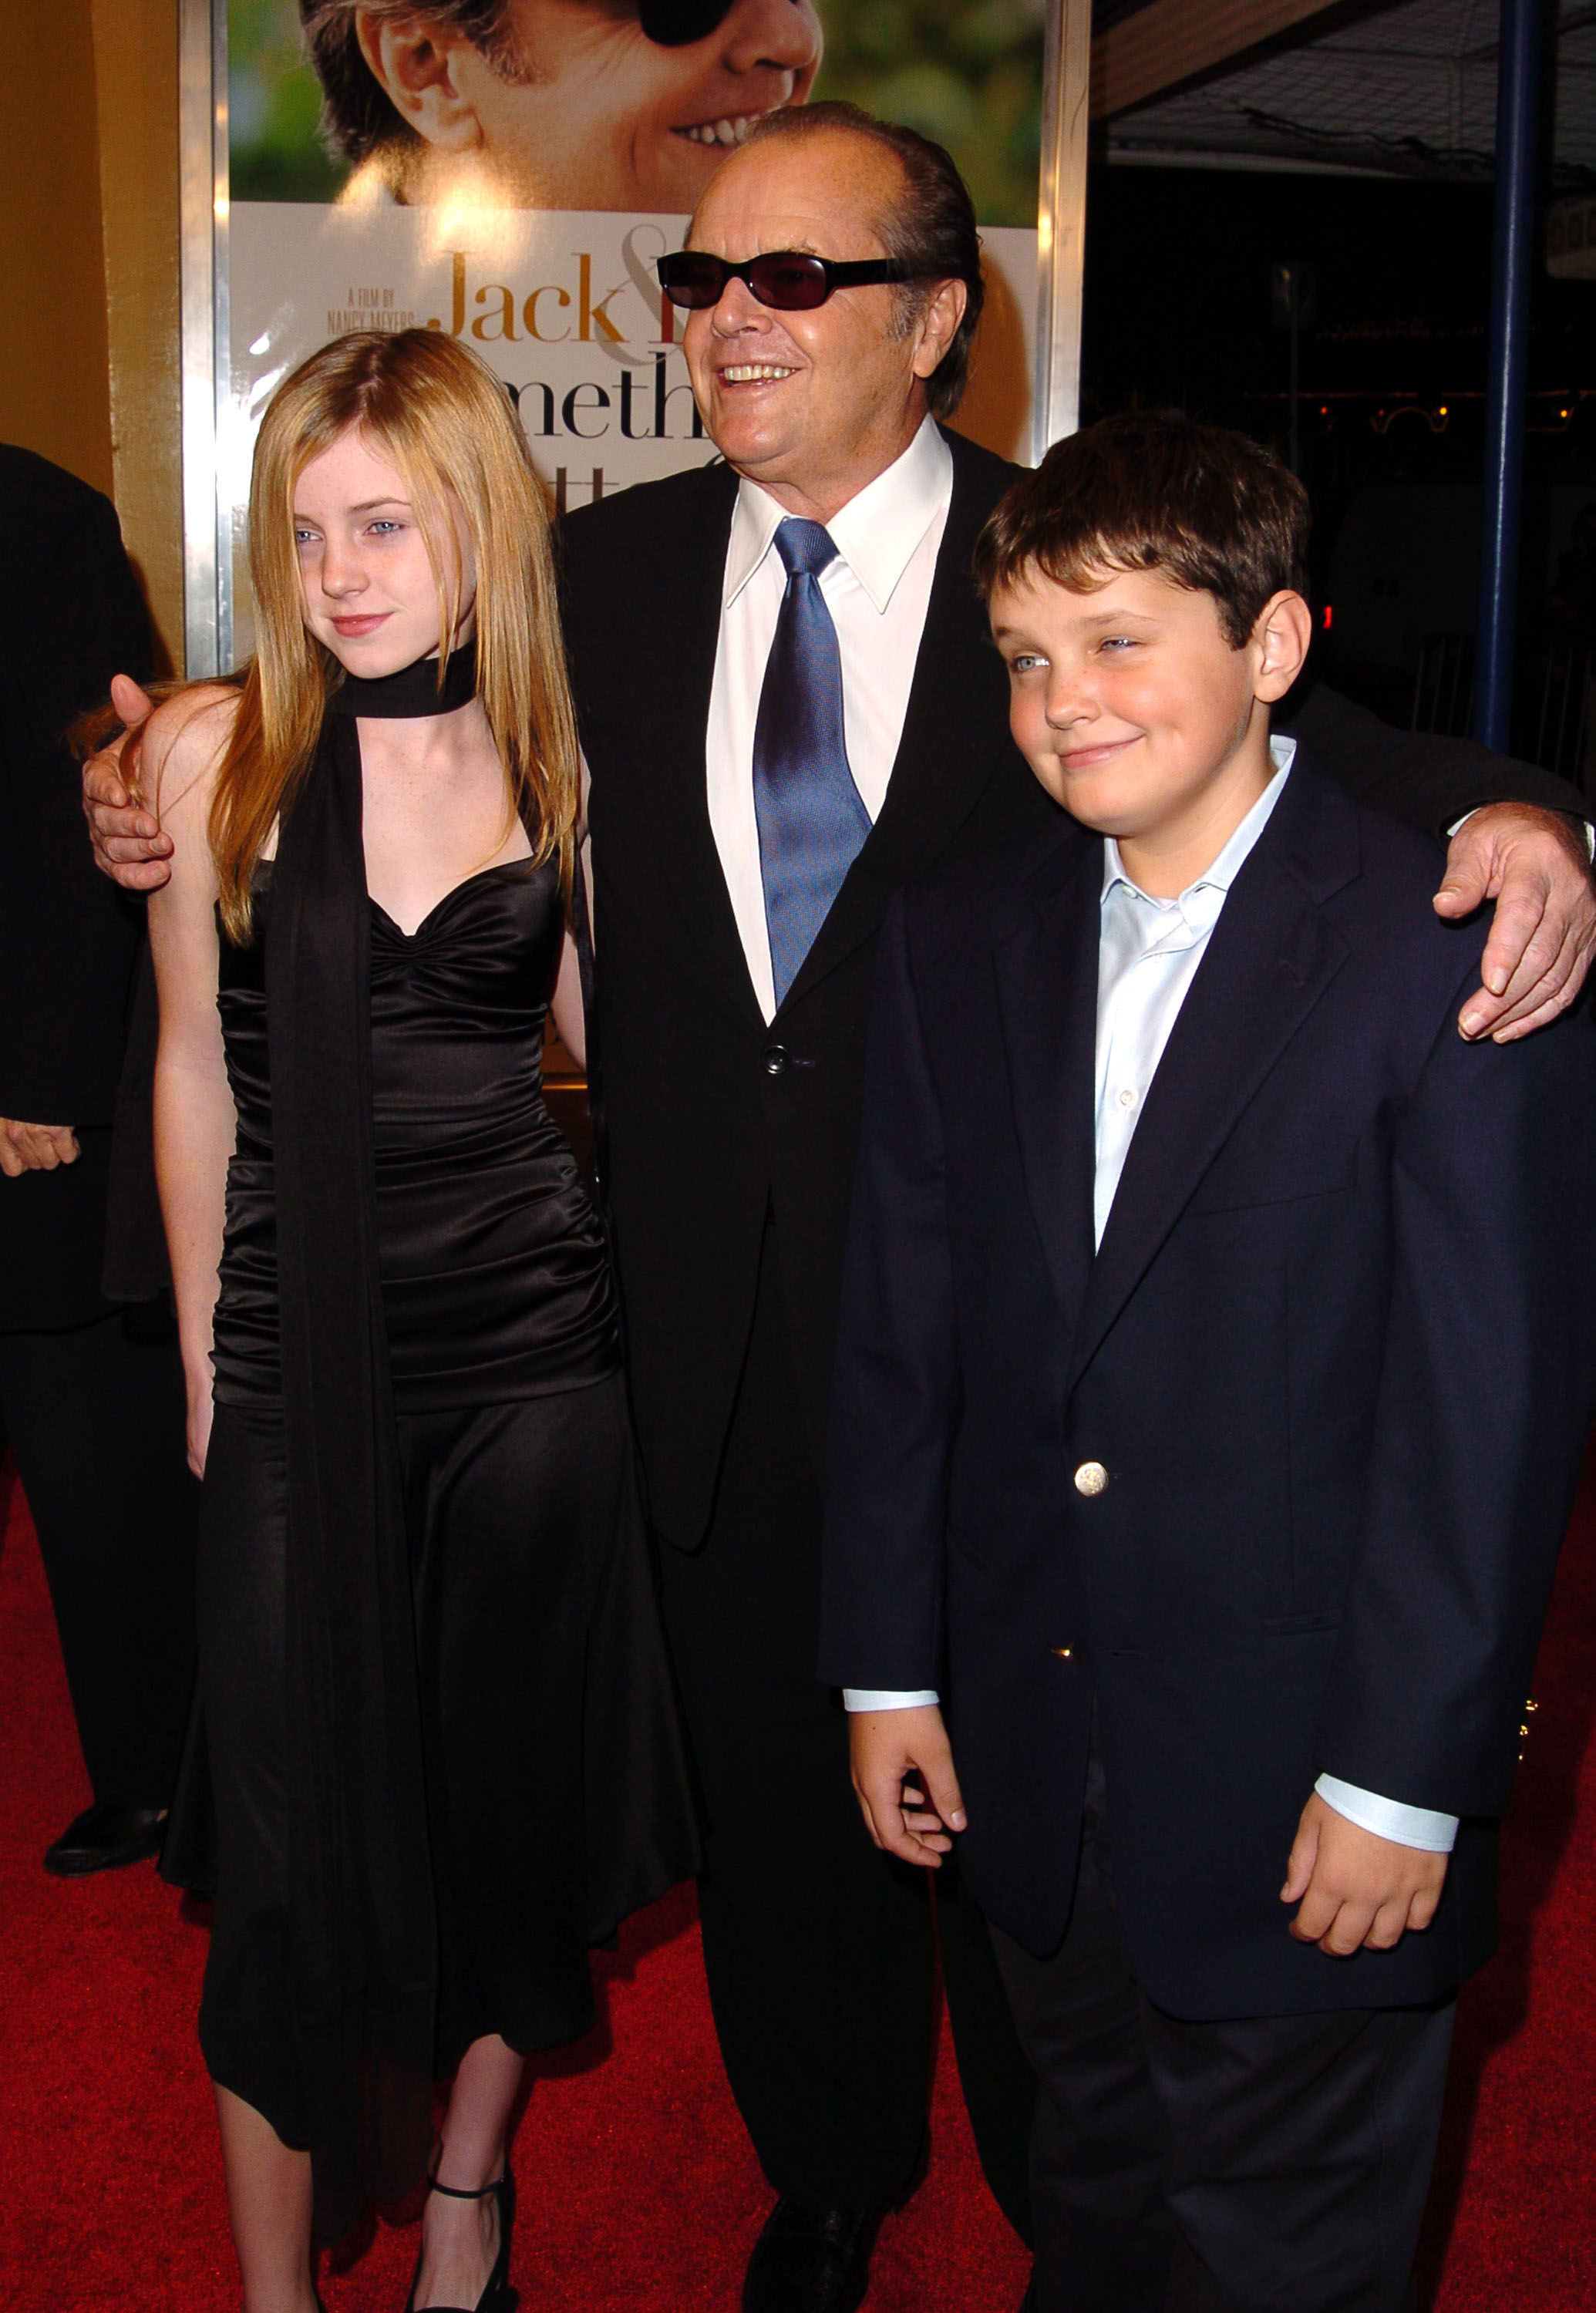 Jack Nicholson et ses enfants Lorraine et Raymond en Californie en 2003 | Source : Getty Images